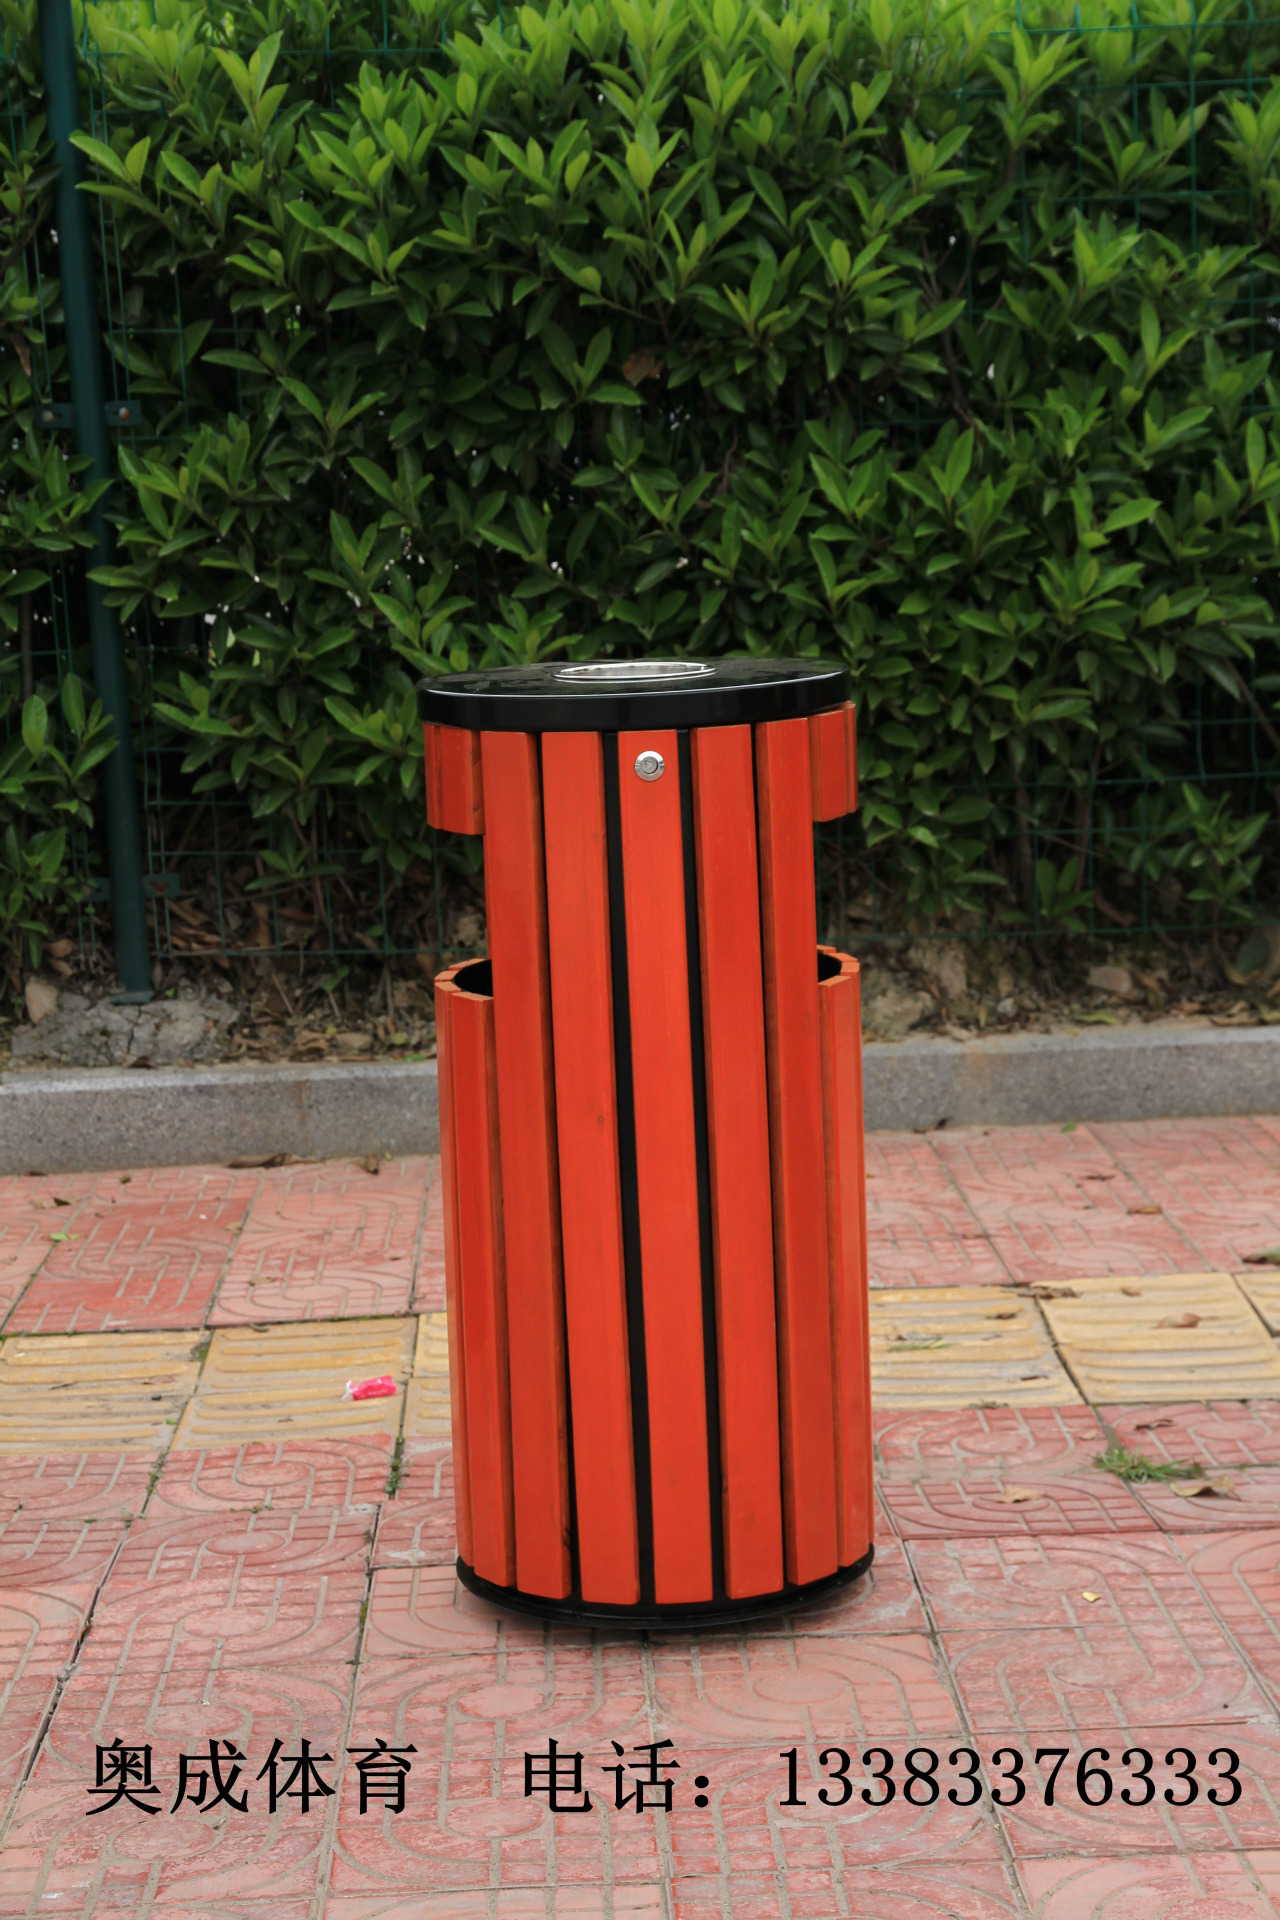 环卫垃圾桶/果皮箱/塑料垃圾桶价格/不锈钢垃圾桶厂家/分类拉圾桶示例图1